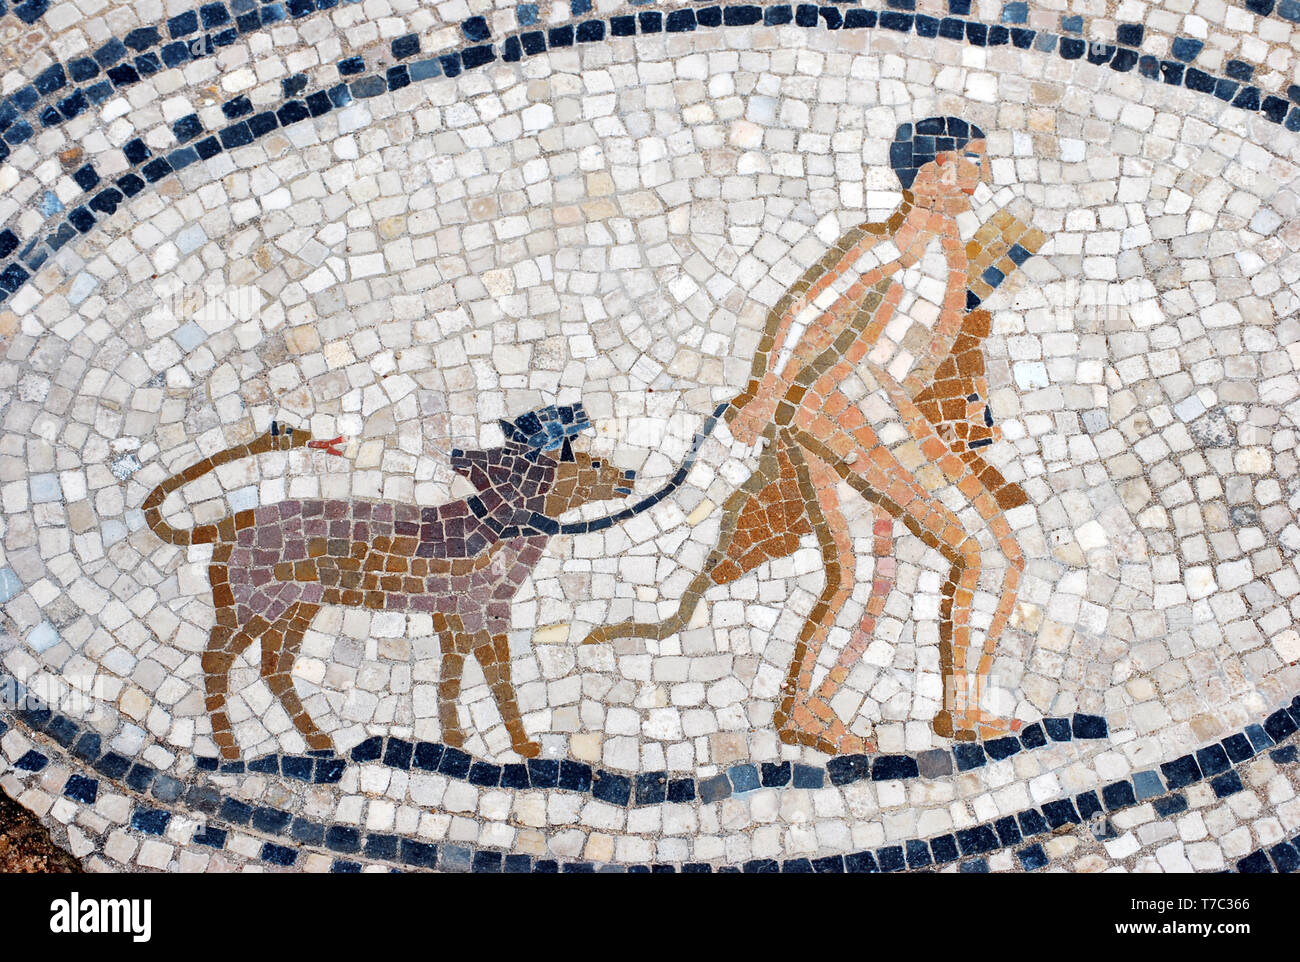 Vue de la mosaïque, Volubilis - Maroc - Hercules et Cerberus. Mosaïque romaine de la maison des travaux d'Hercule Banque D'Images